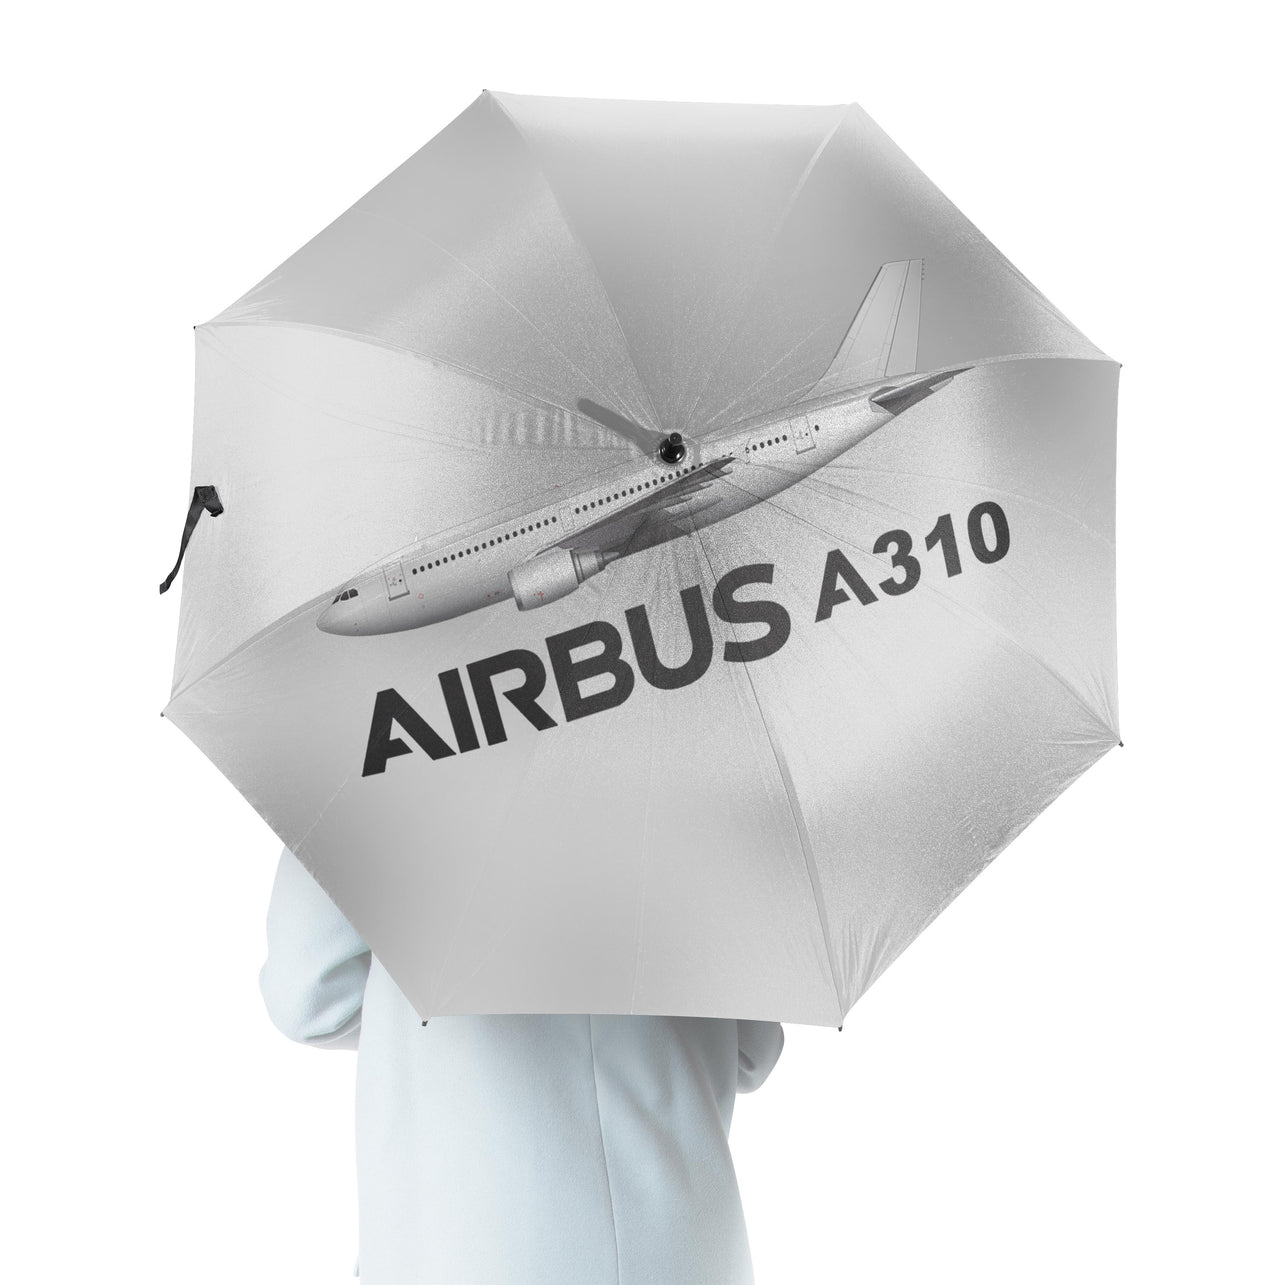 The Airbus A310 Designed Umbrella